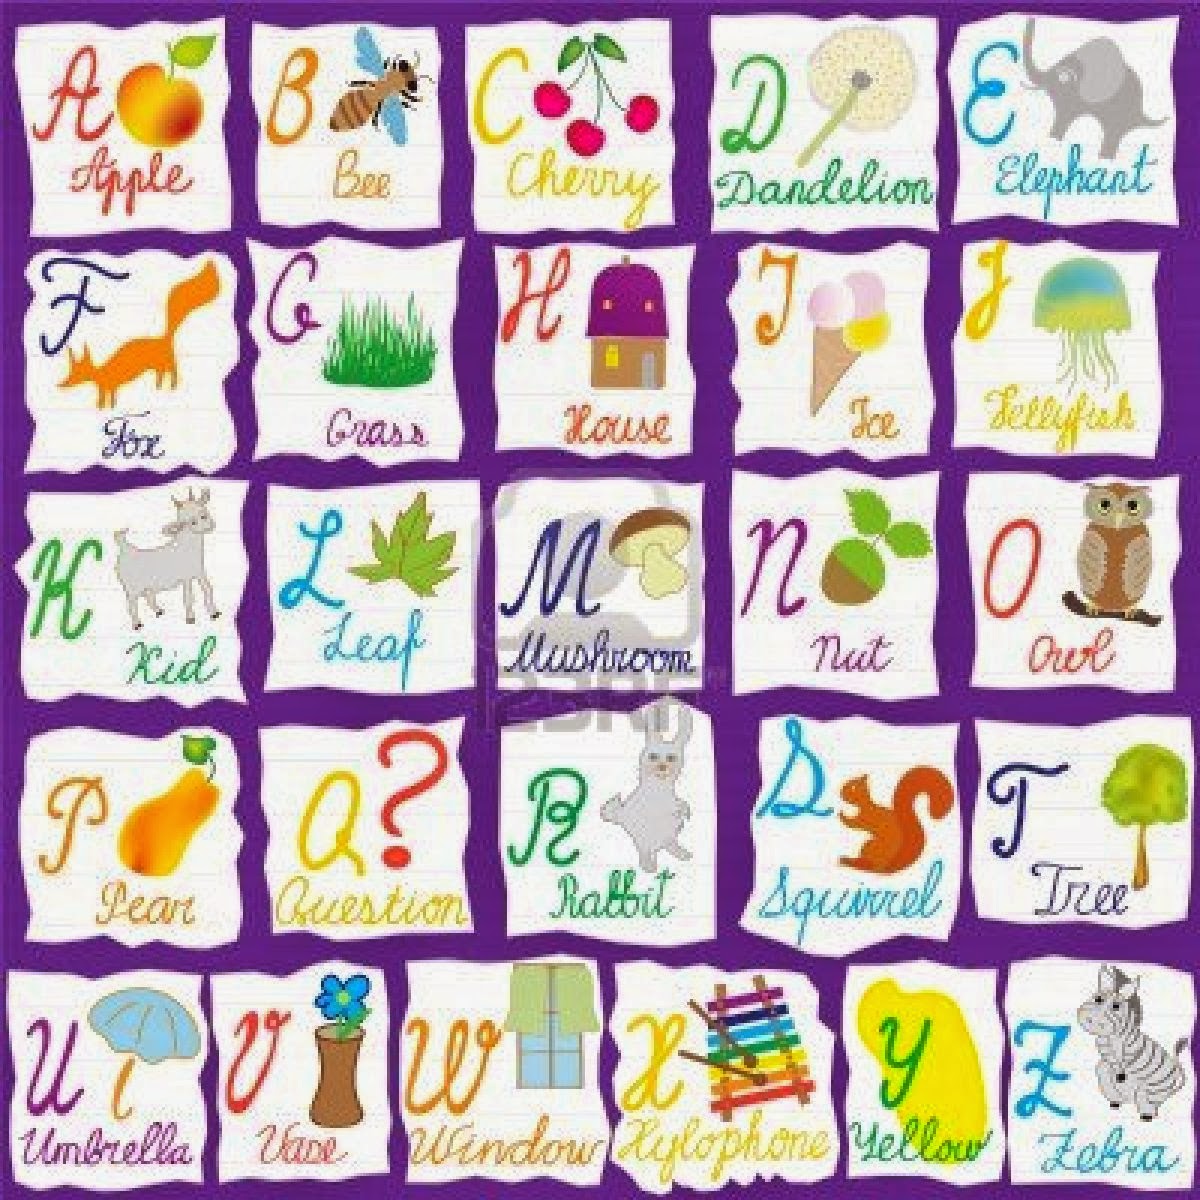 El Abecedario En Ingles Blog de los niños: Aprender el alfabeto en inglés